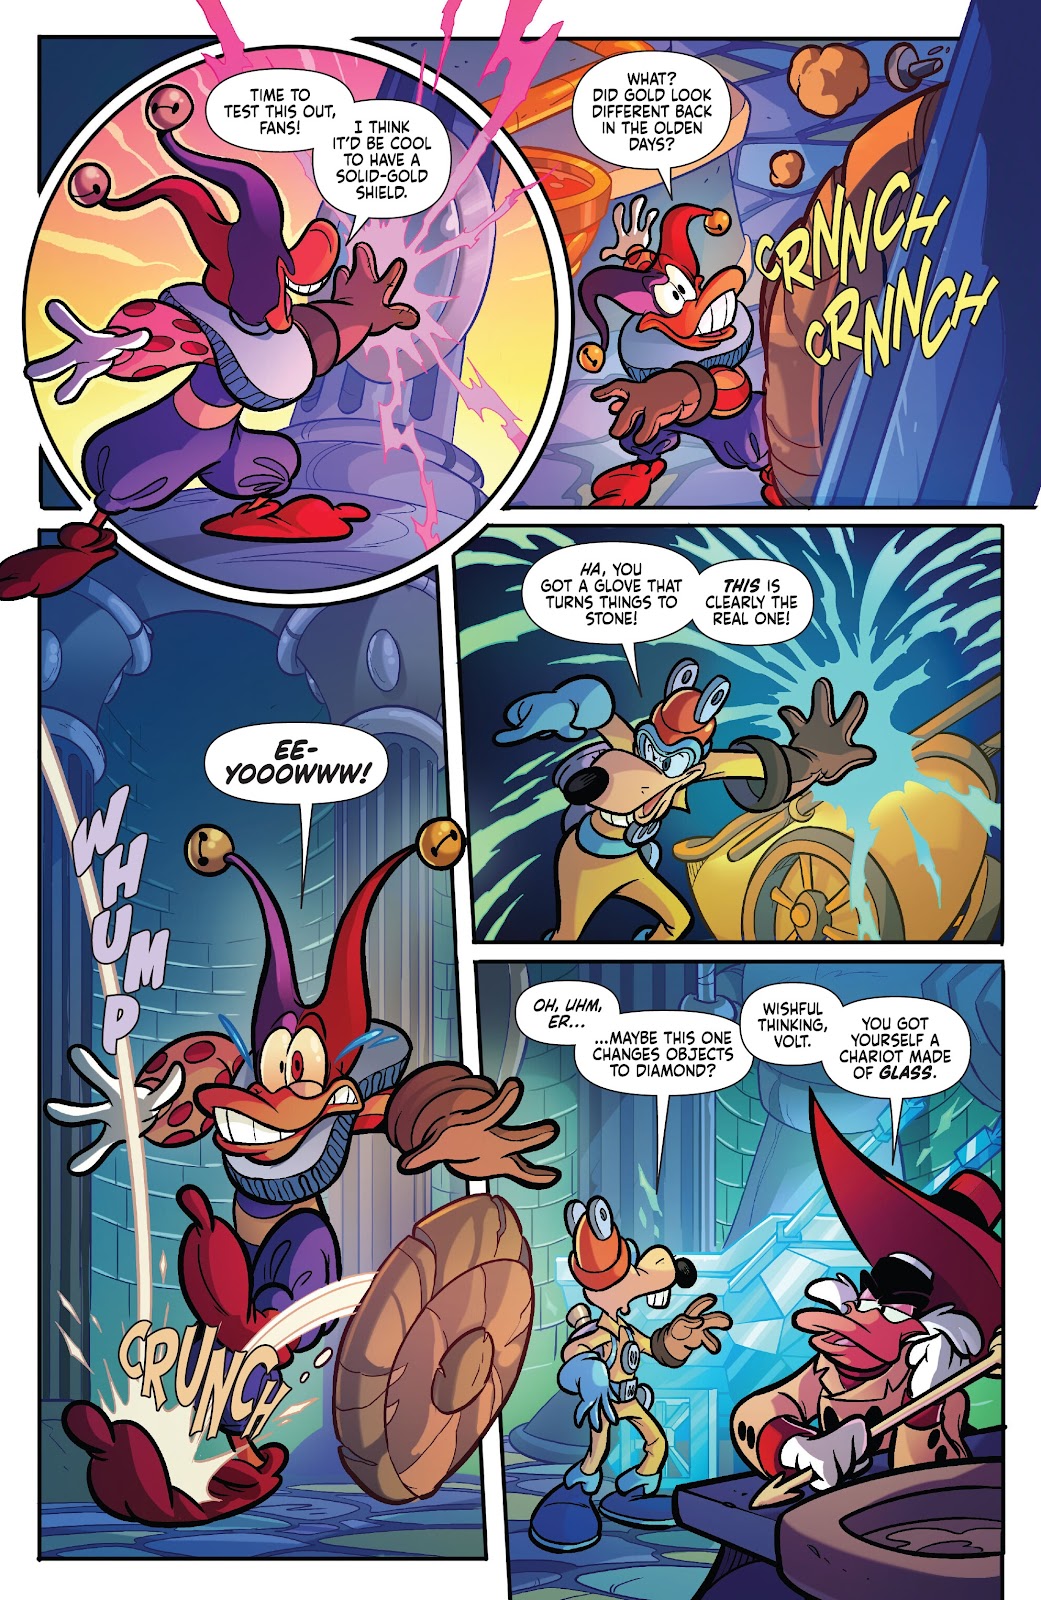 Darkwing Duck: Negaduck issue 3 - Page 23